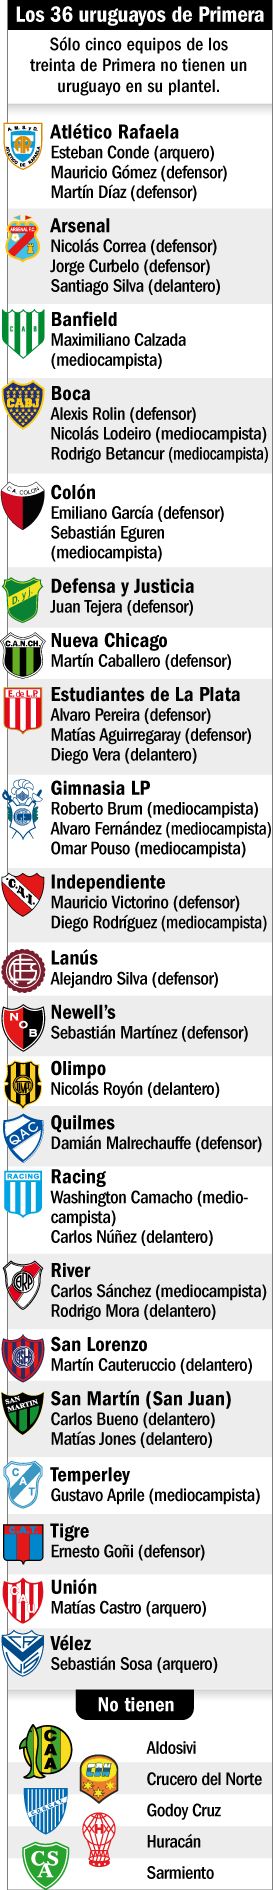 Los futbolistas uruguayos son elegidos por los clubes argentinos.